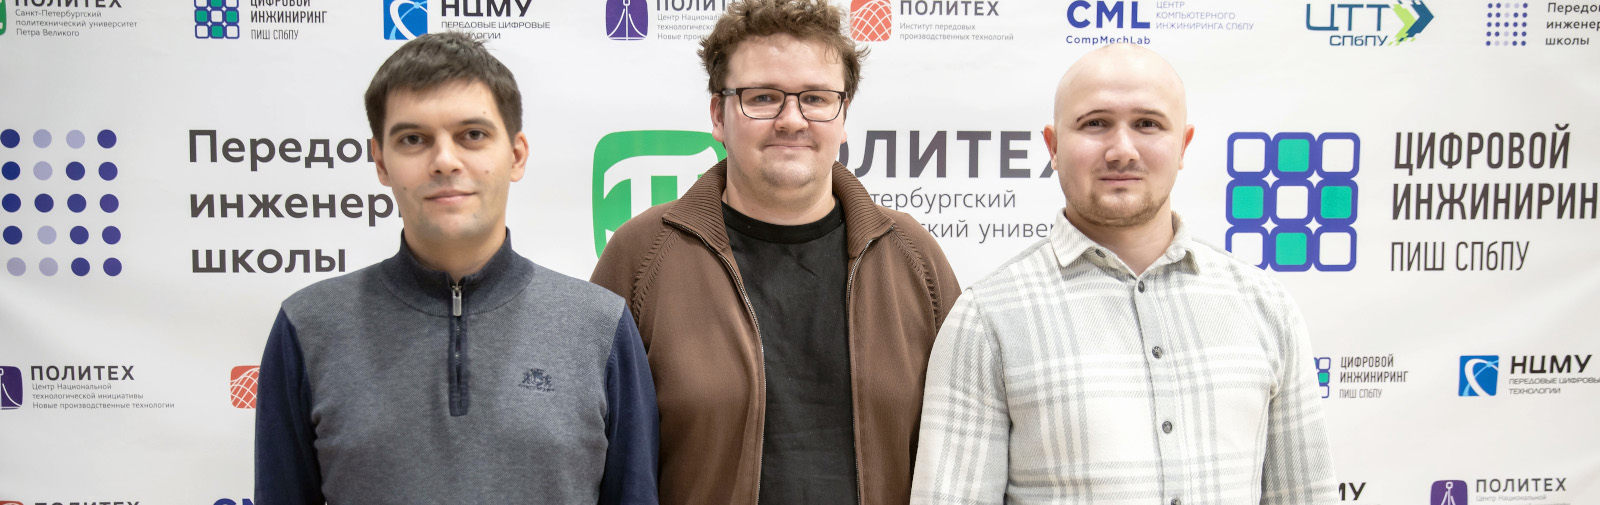 Аспиранты ПИШ СПбПУ вошли в число победителей конкурса грантов для студентов и аспирантов Санкт-Петербурга